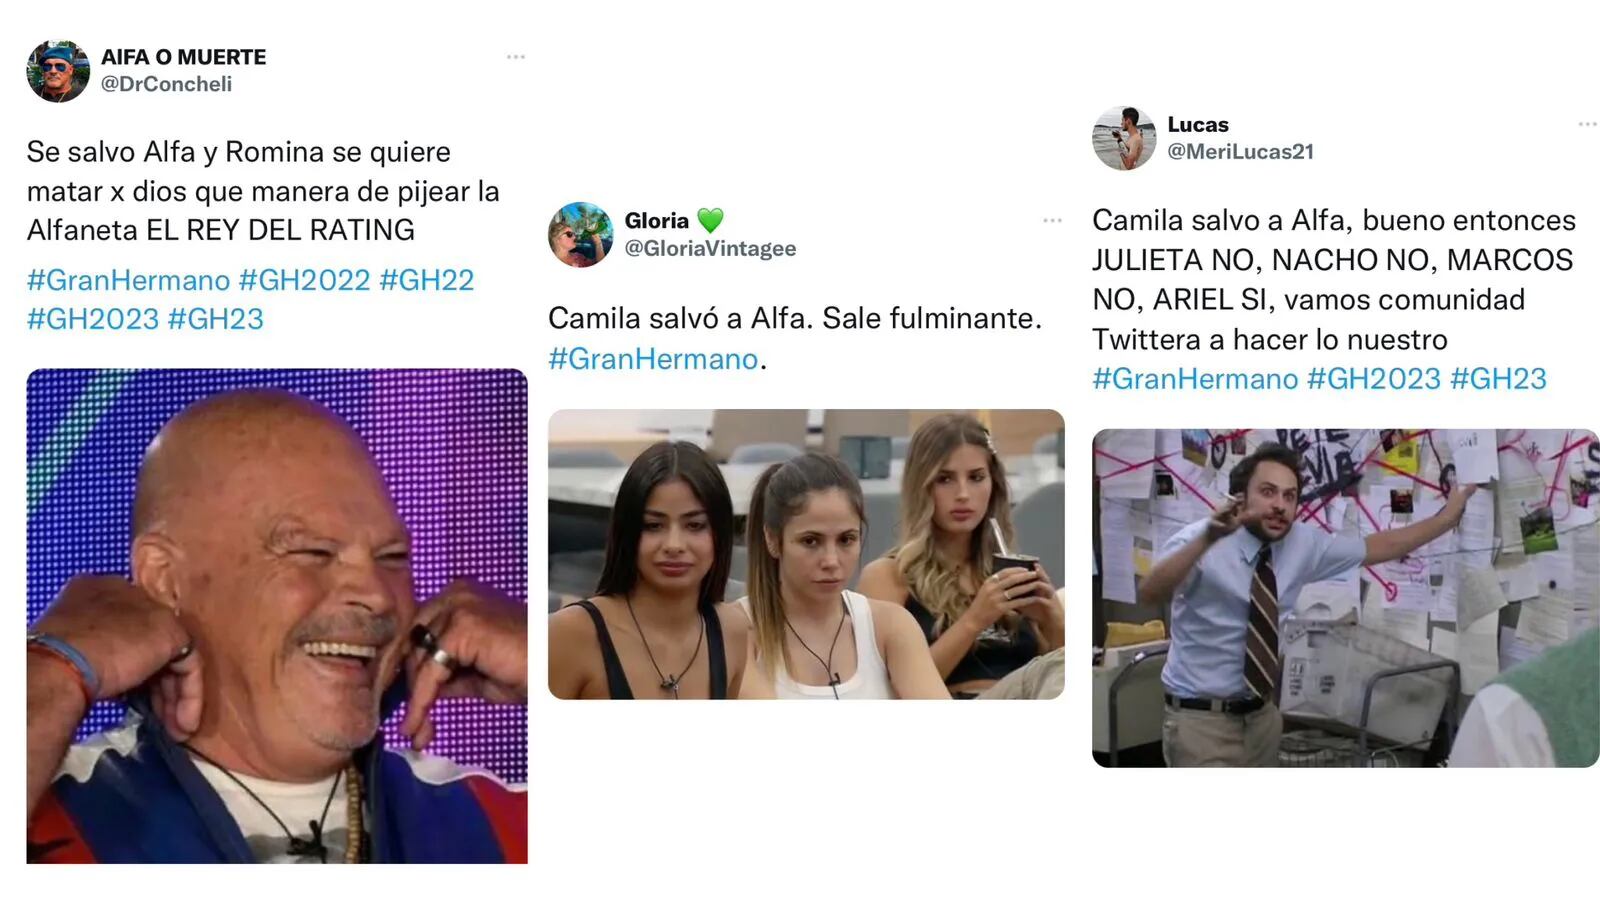 Camila salvó a Alfa de la placa de Gran Hermano y los memes salieron con furia: “Te ganaste el odio”.